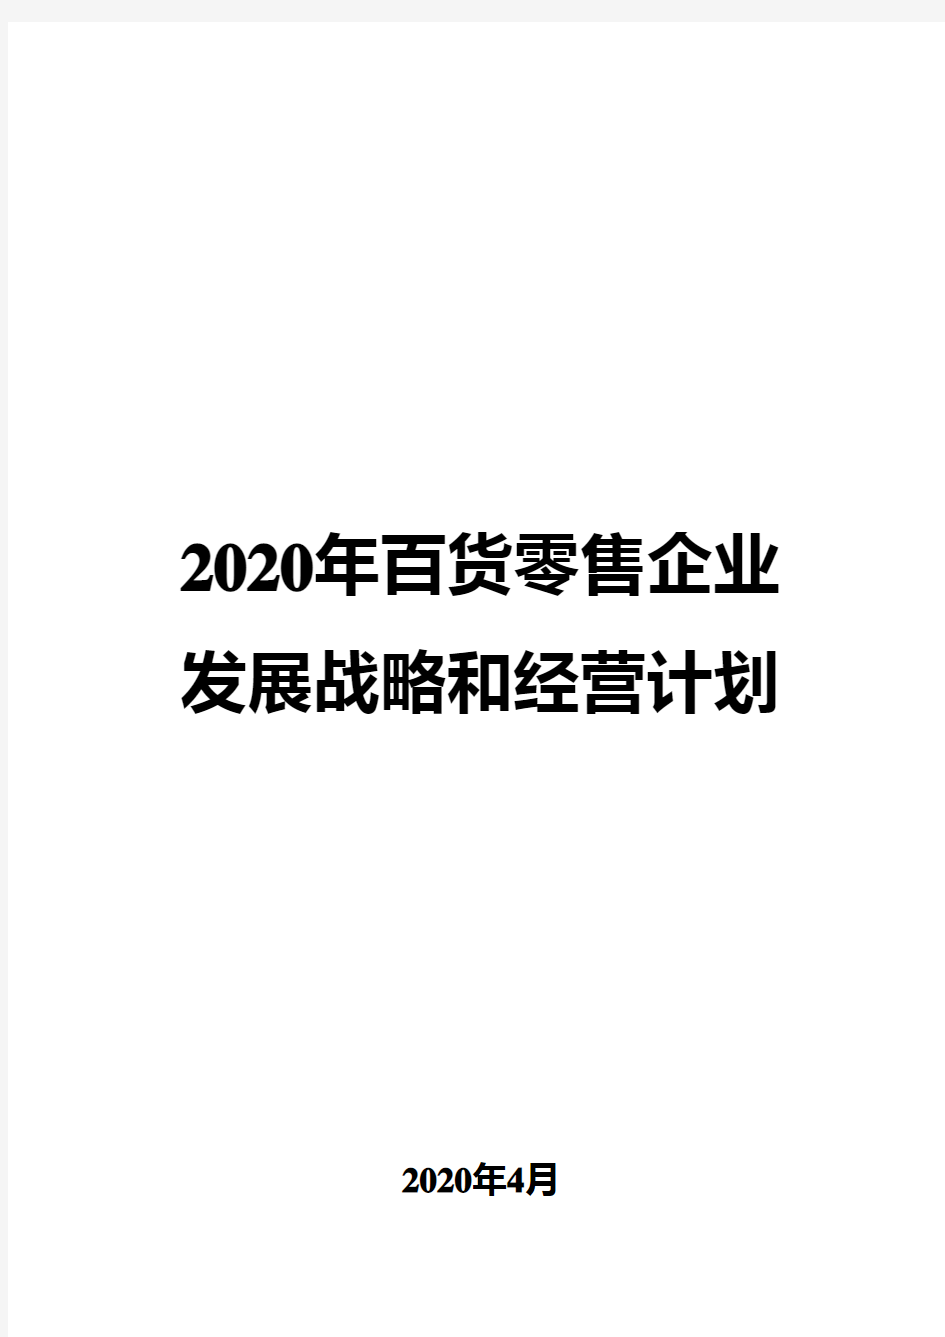 2020年百货零售企业发展战略和经营计划